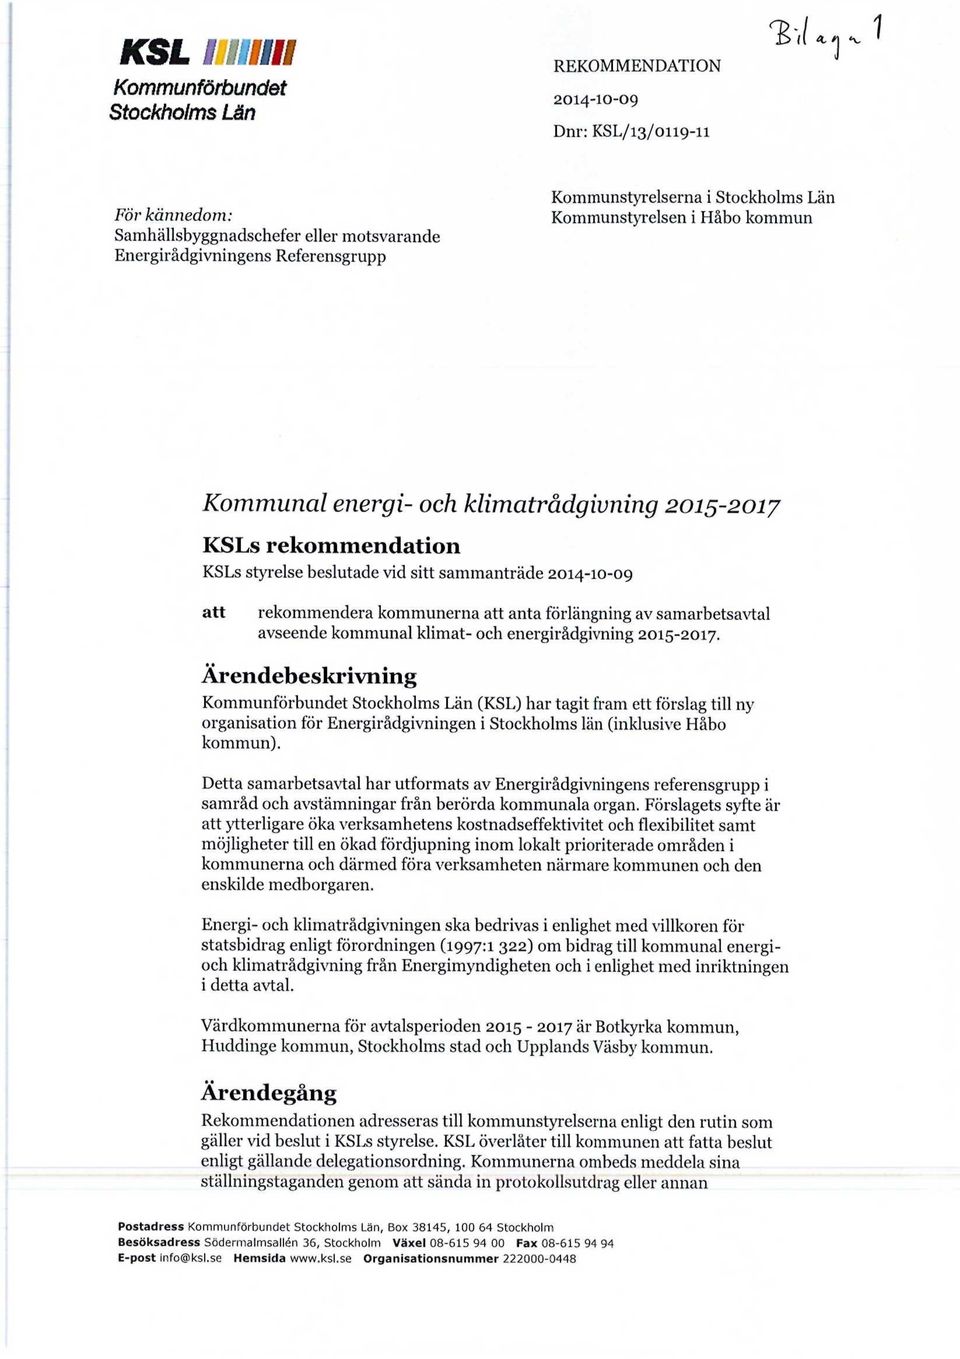 2014-10-09 att rekommendera kommunerna att anta förlängning av samarbetsavtal avseende kommunal klimat- och energirådgivning 2015-2017.